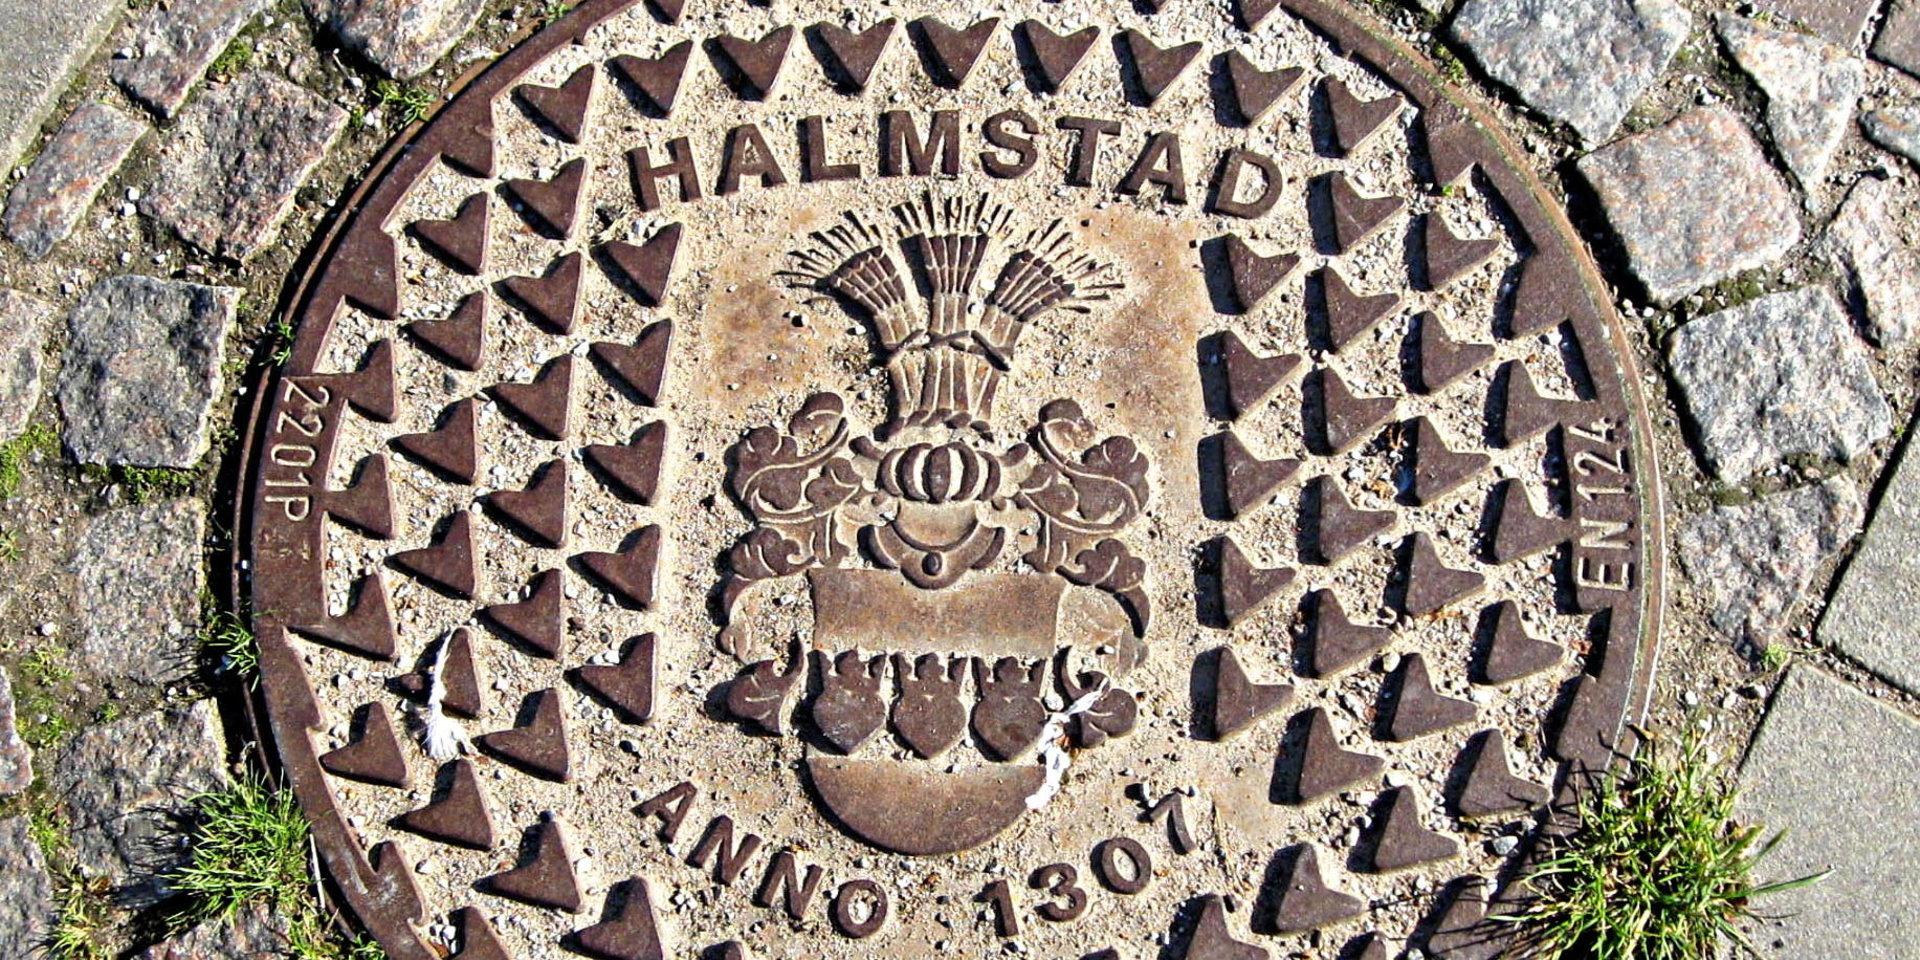 Till Halmstads 700-årsjubileum tog kommunen fram detta gatubrunnslock. Halmstad är tillsammans med Malmö den enda stad som har ett komplett vapen med hjälm, hjälmprydnad, hjälmtäcke, klenlod och sköld.